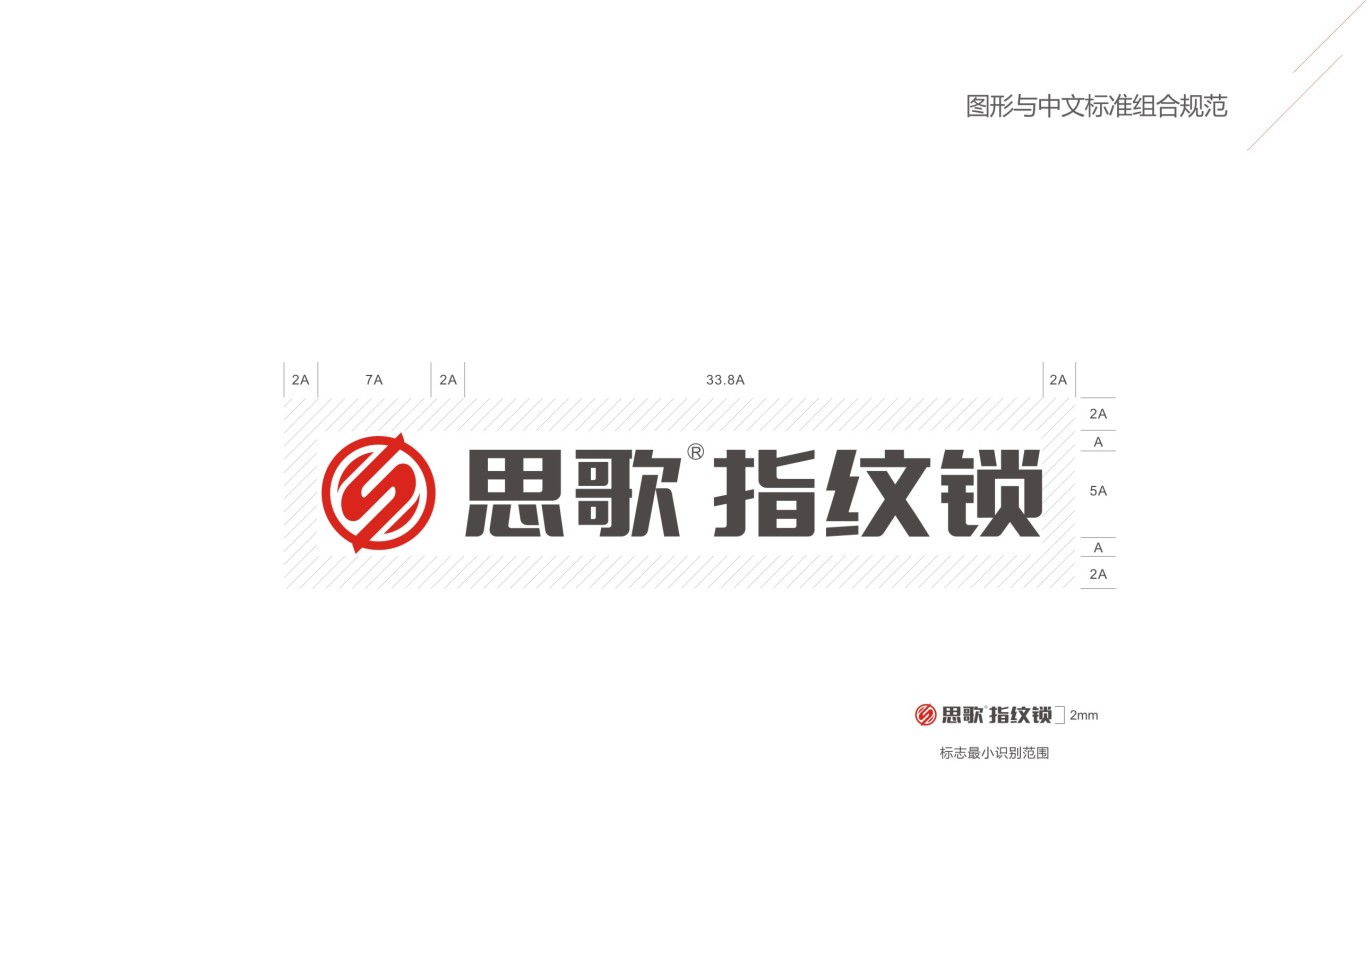 思歌锁业logo设计图9